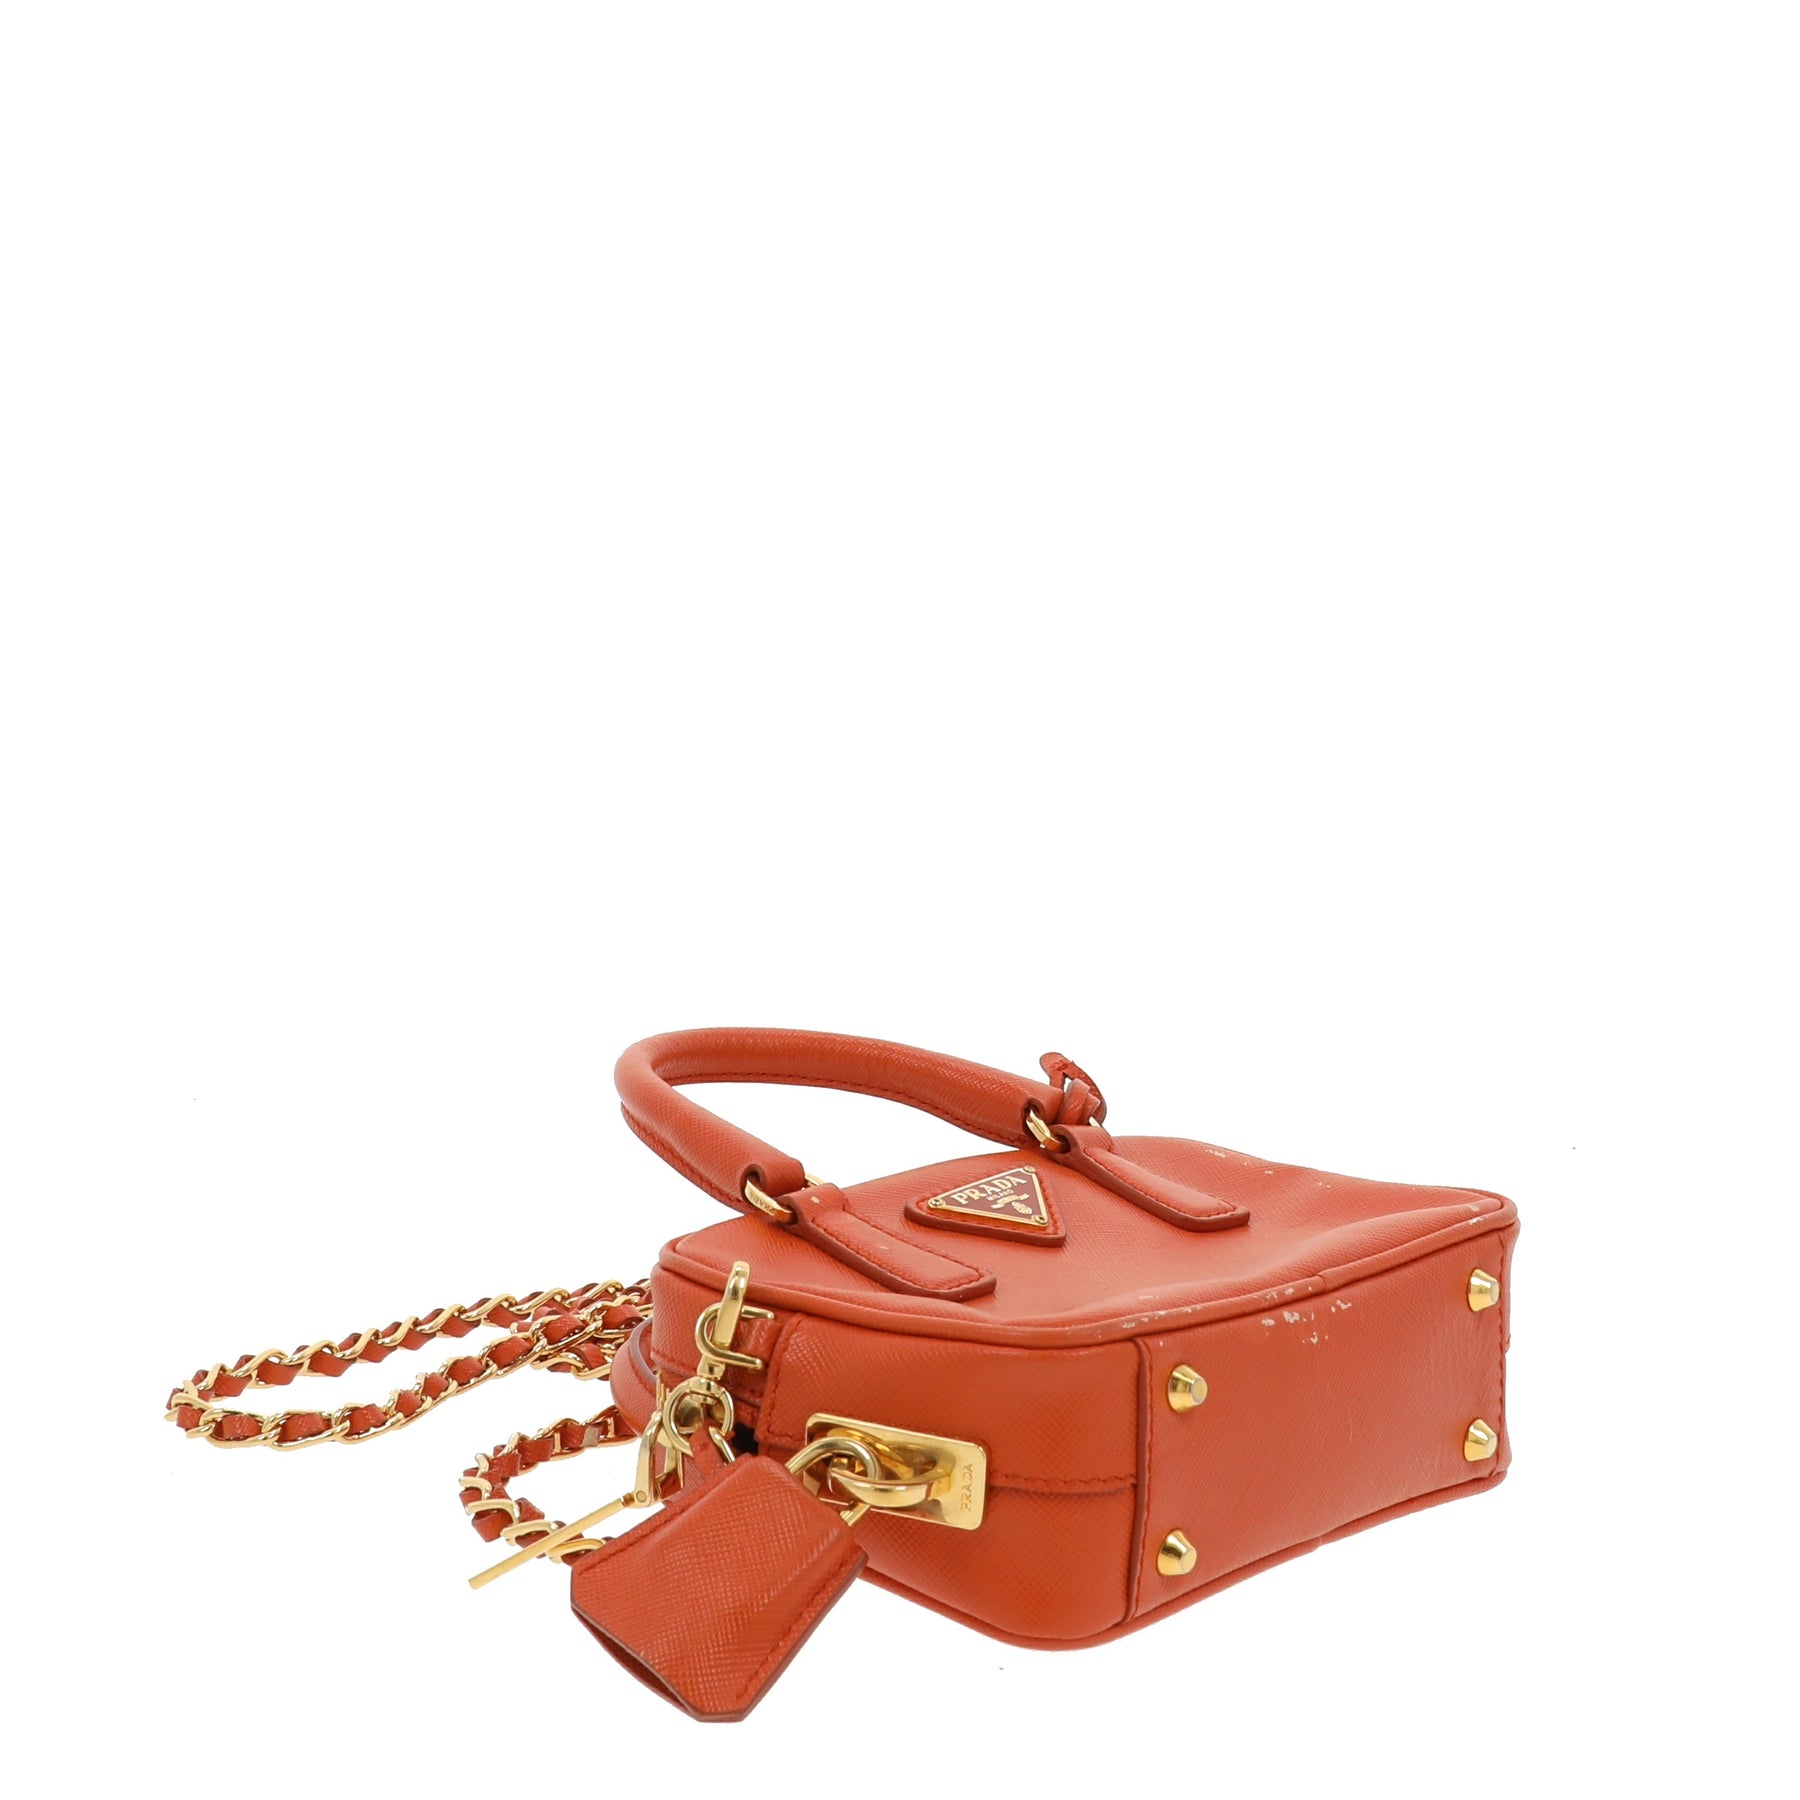 PRADA: Galleria bag in saffiano leather - Orange